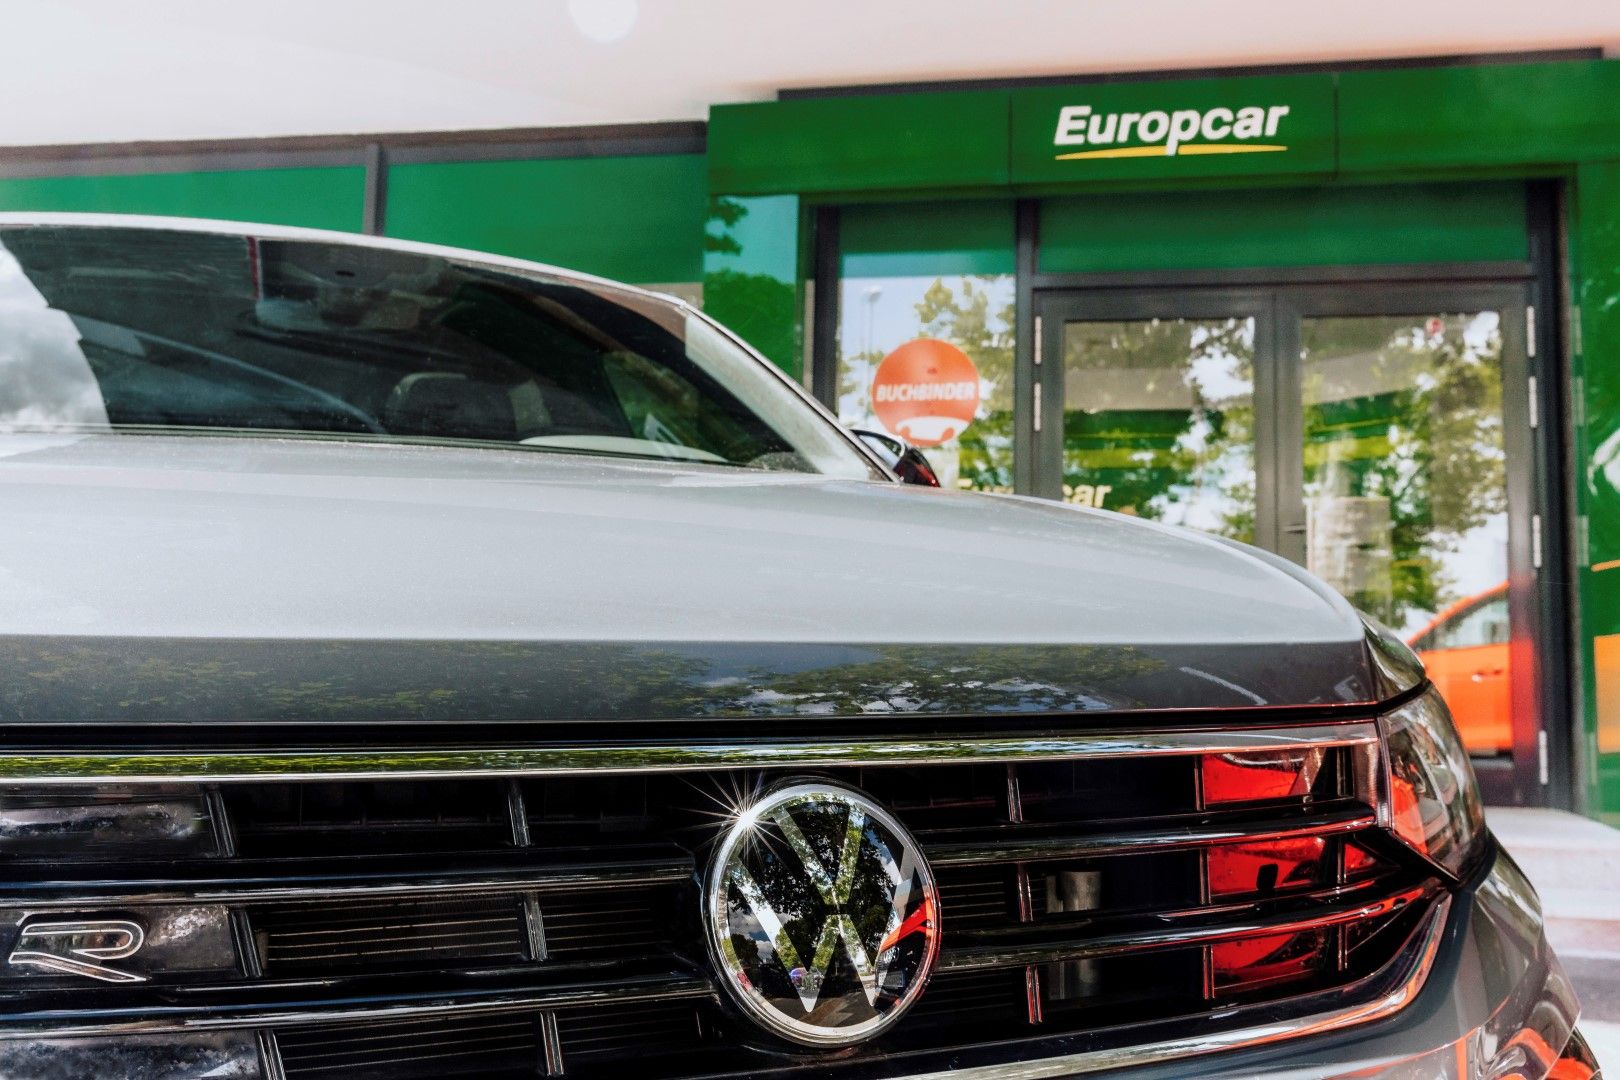 Η Volkswagen εξαγόρασε τη Europcar!